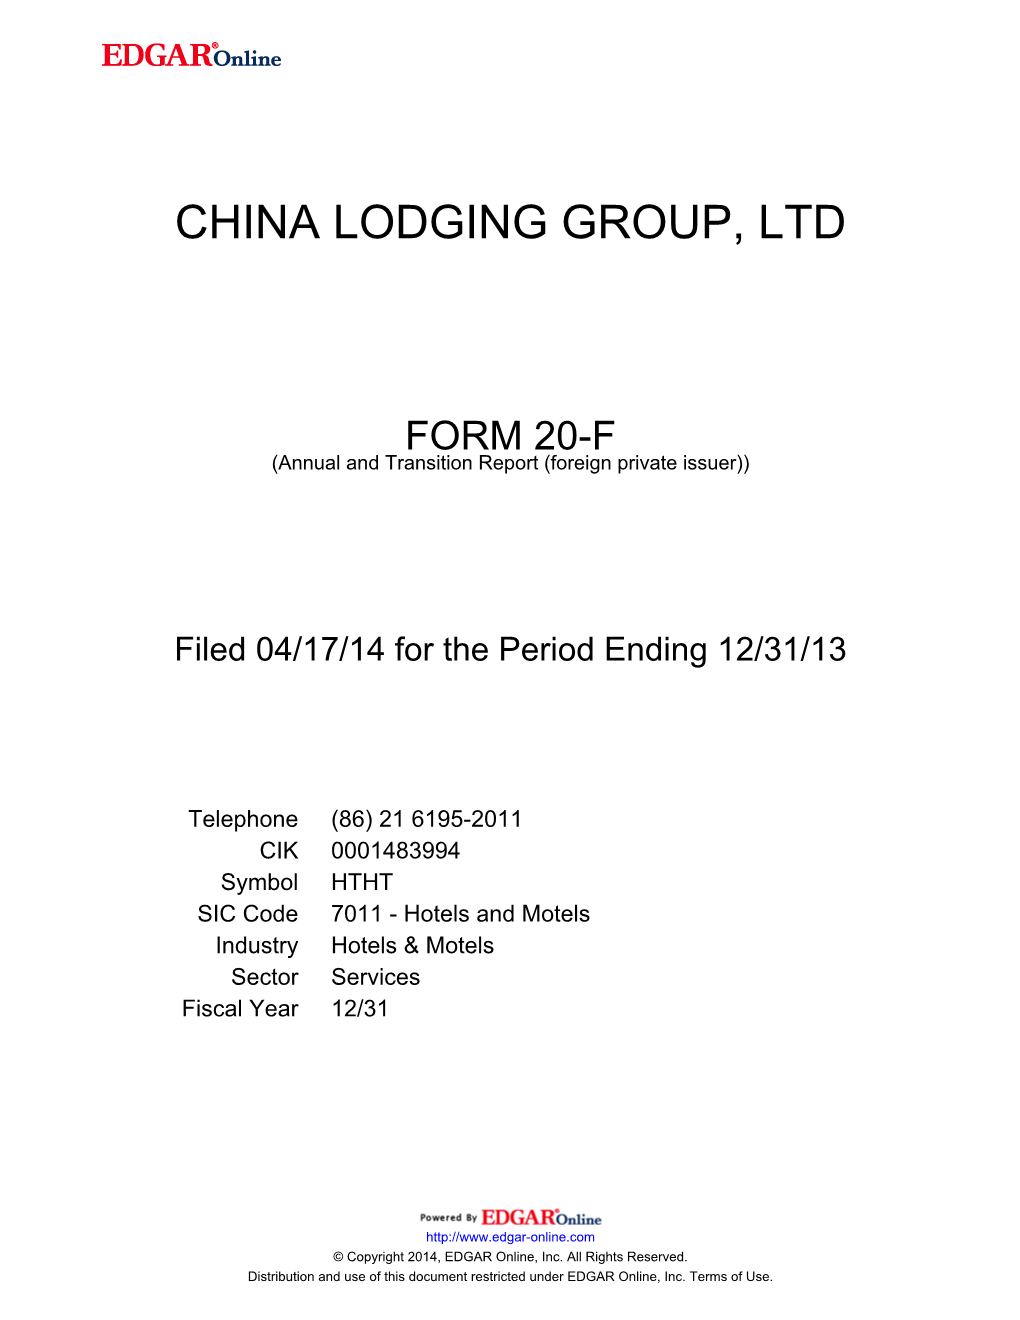 China Lodging Group, Ltd